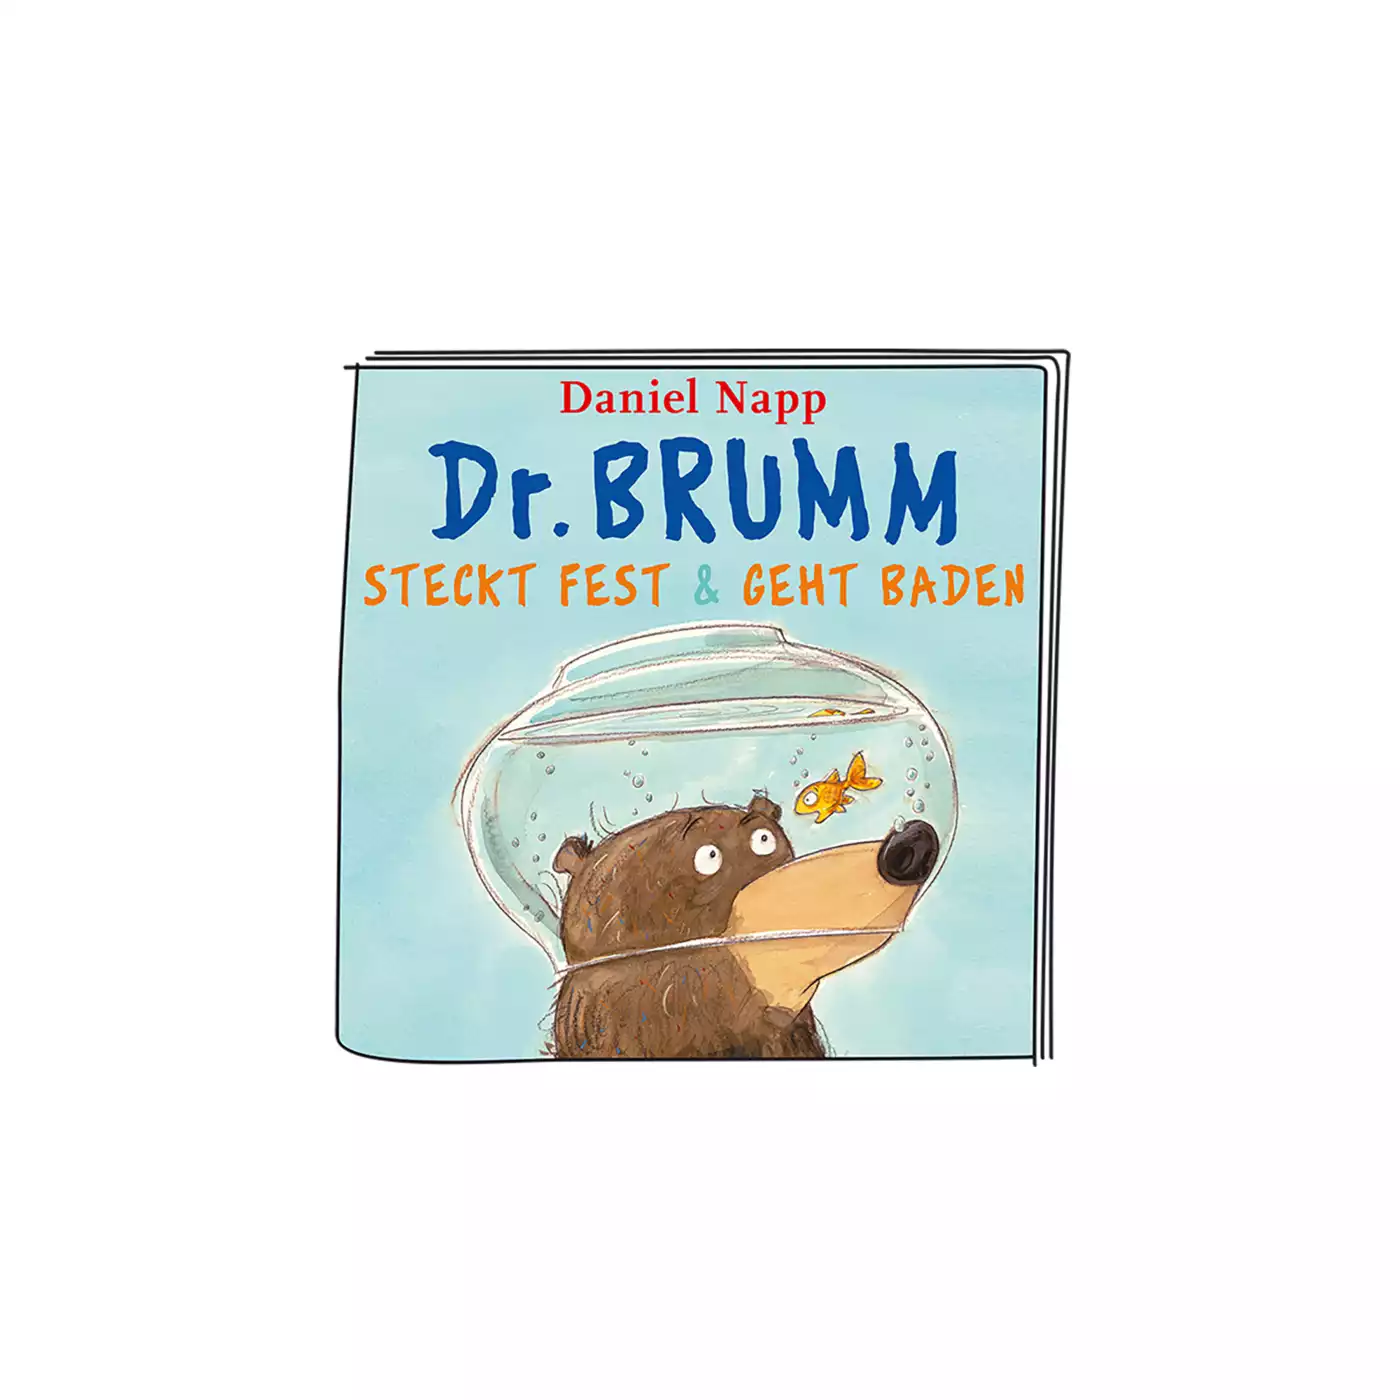 Dr. Brumm steckt fest & geht baden tonies 2000574390611 5